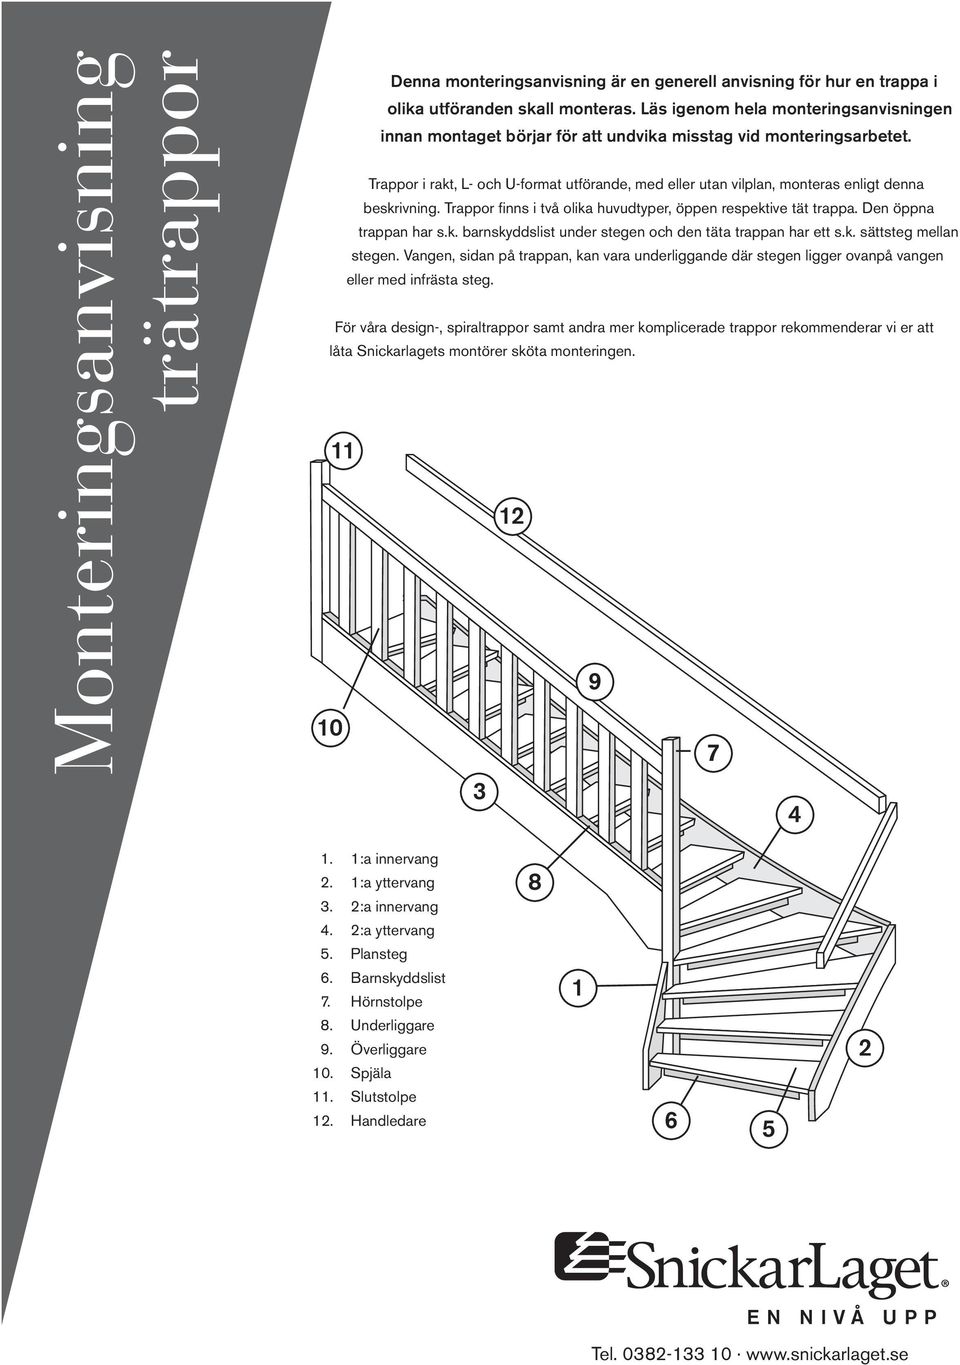 Trappor i rakt, L- och U-format utförande, med eller utan vilplan, monteras enligt denna beskrivning. Trappor finns i två olika huvudtyper, öppen respektive tät trappa. Den öppna trappan har s.k. barnskyddslist under stegen och den täta trappan har ett s.